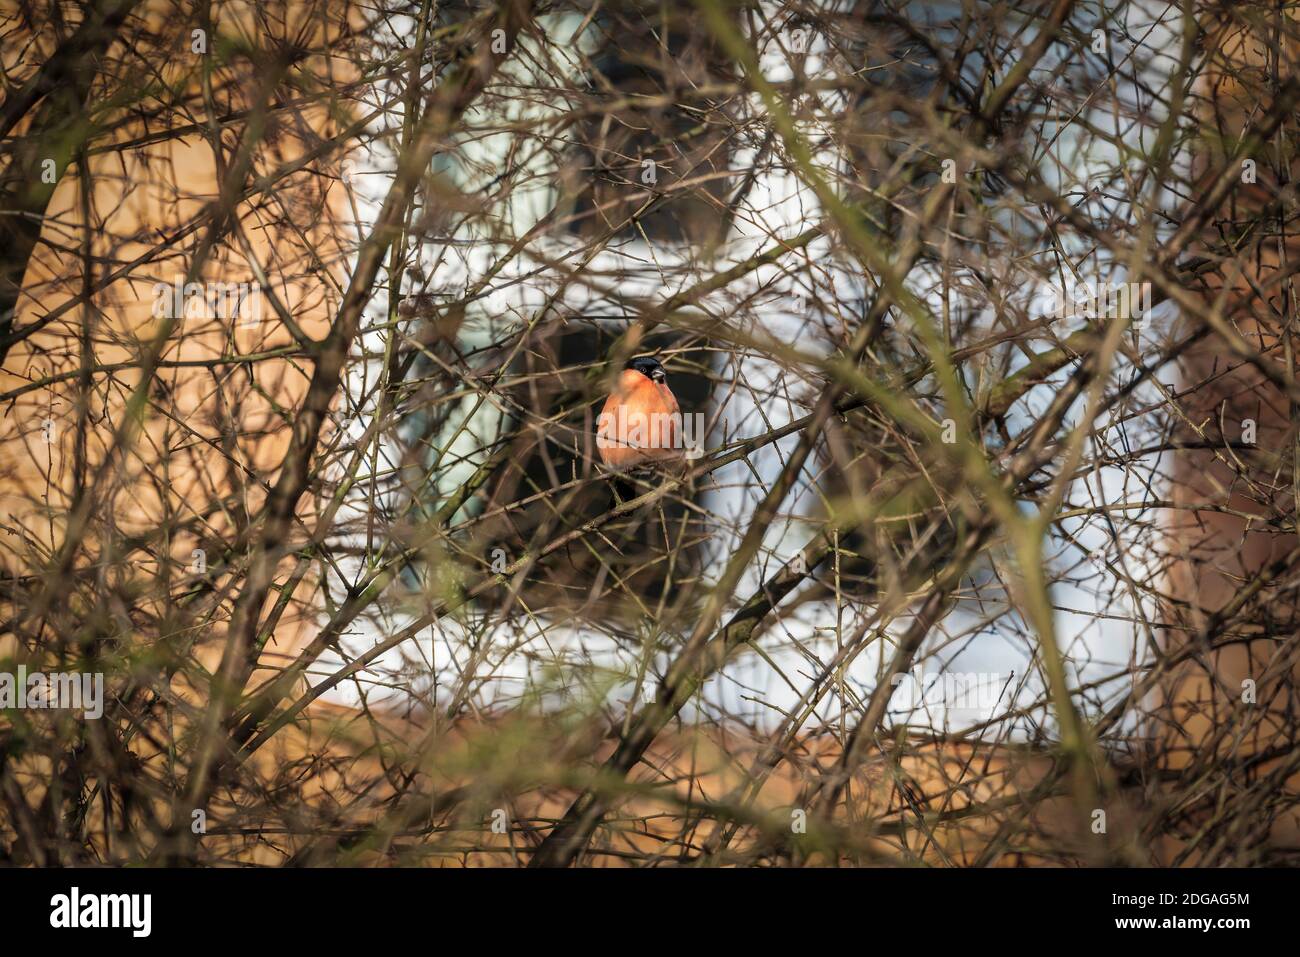 Der Eurasische Gimpel, gewöhnlicher Gimpel oder Gimpel in den Ästen eines Baumes. Ein kleiner Singvogel in der Familie der Finken. Stockfoto